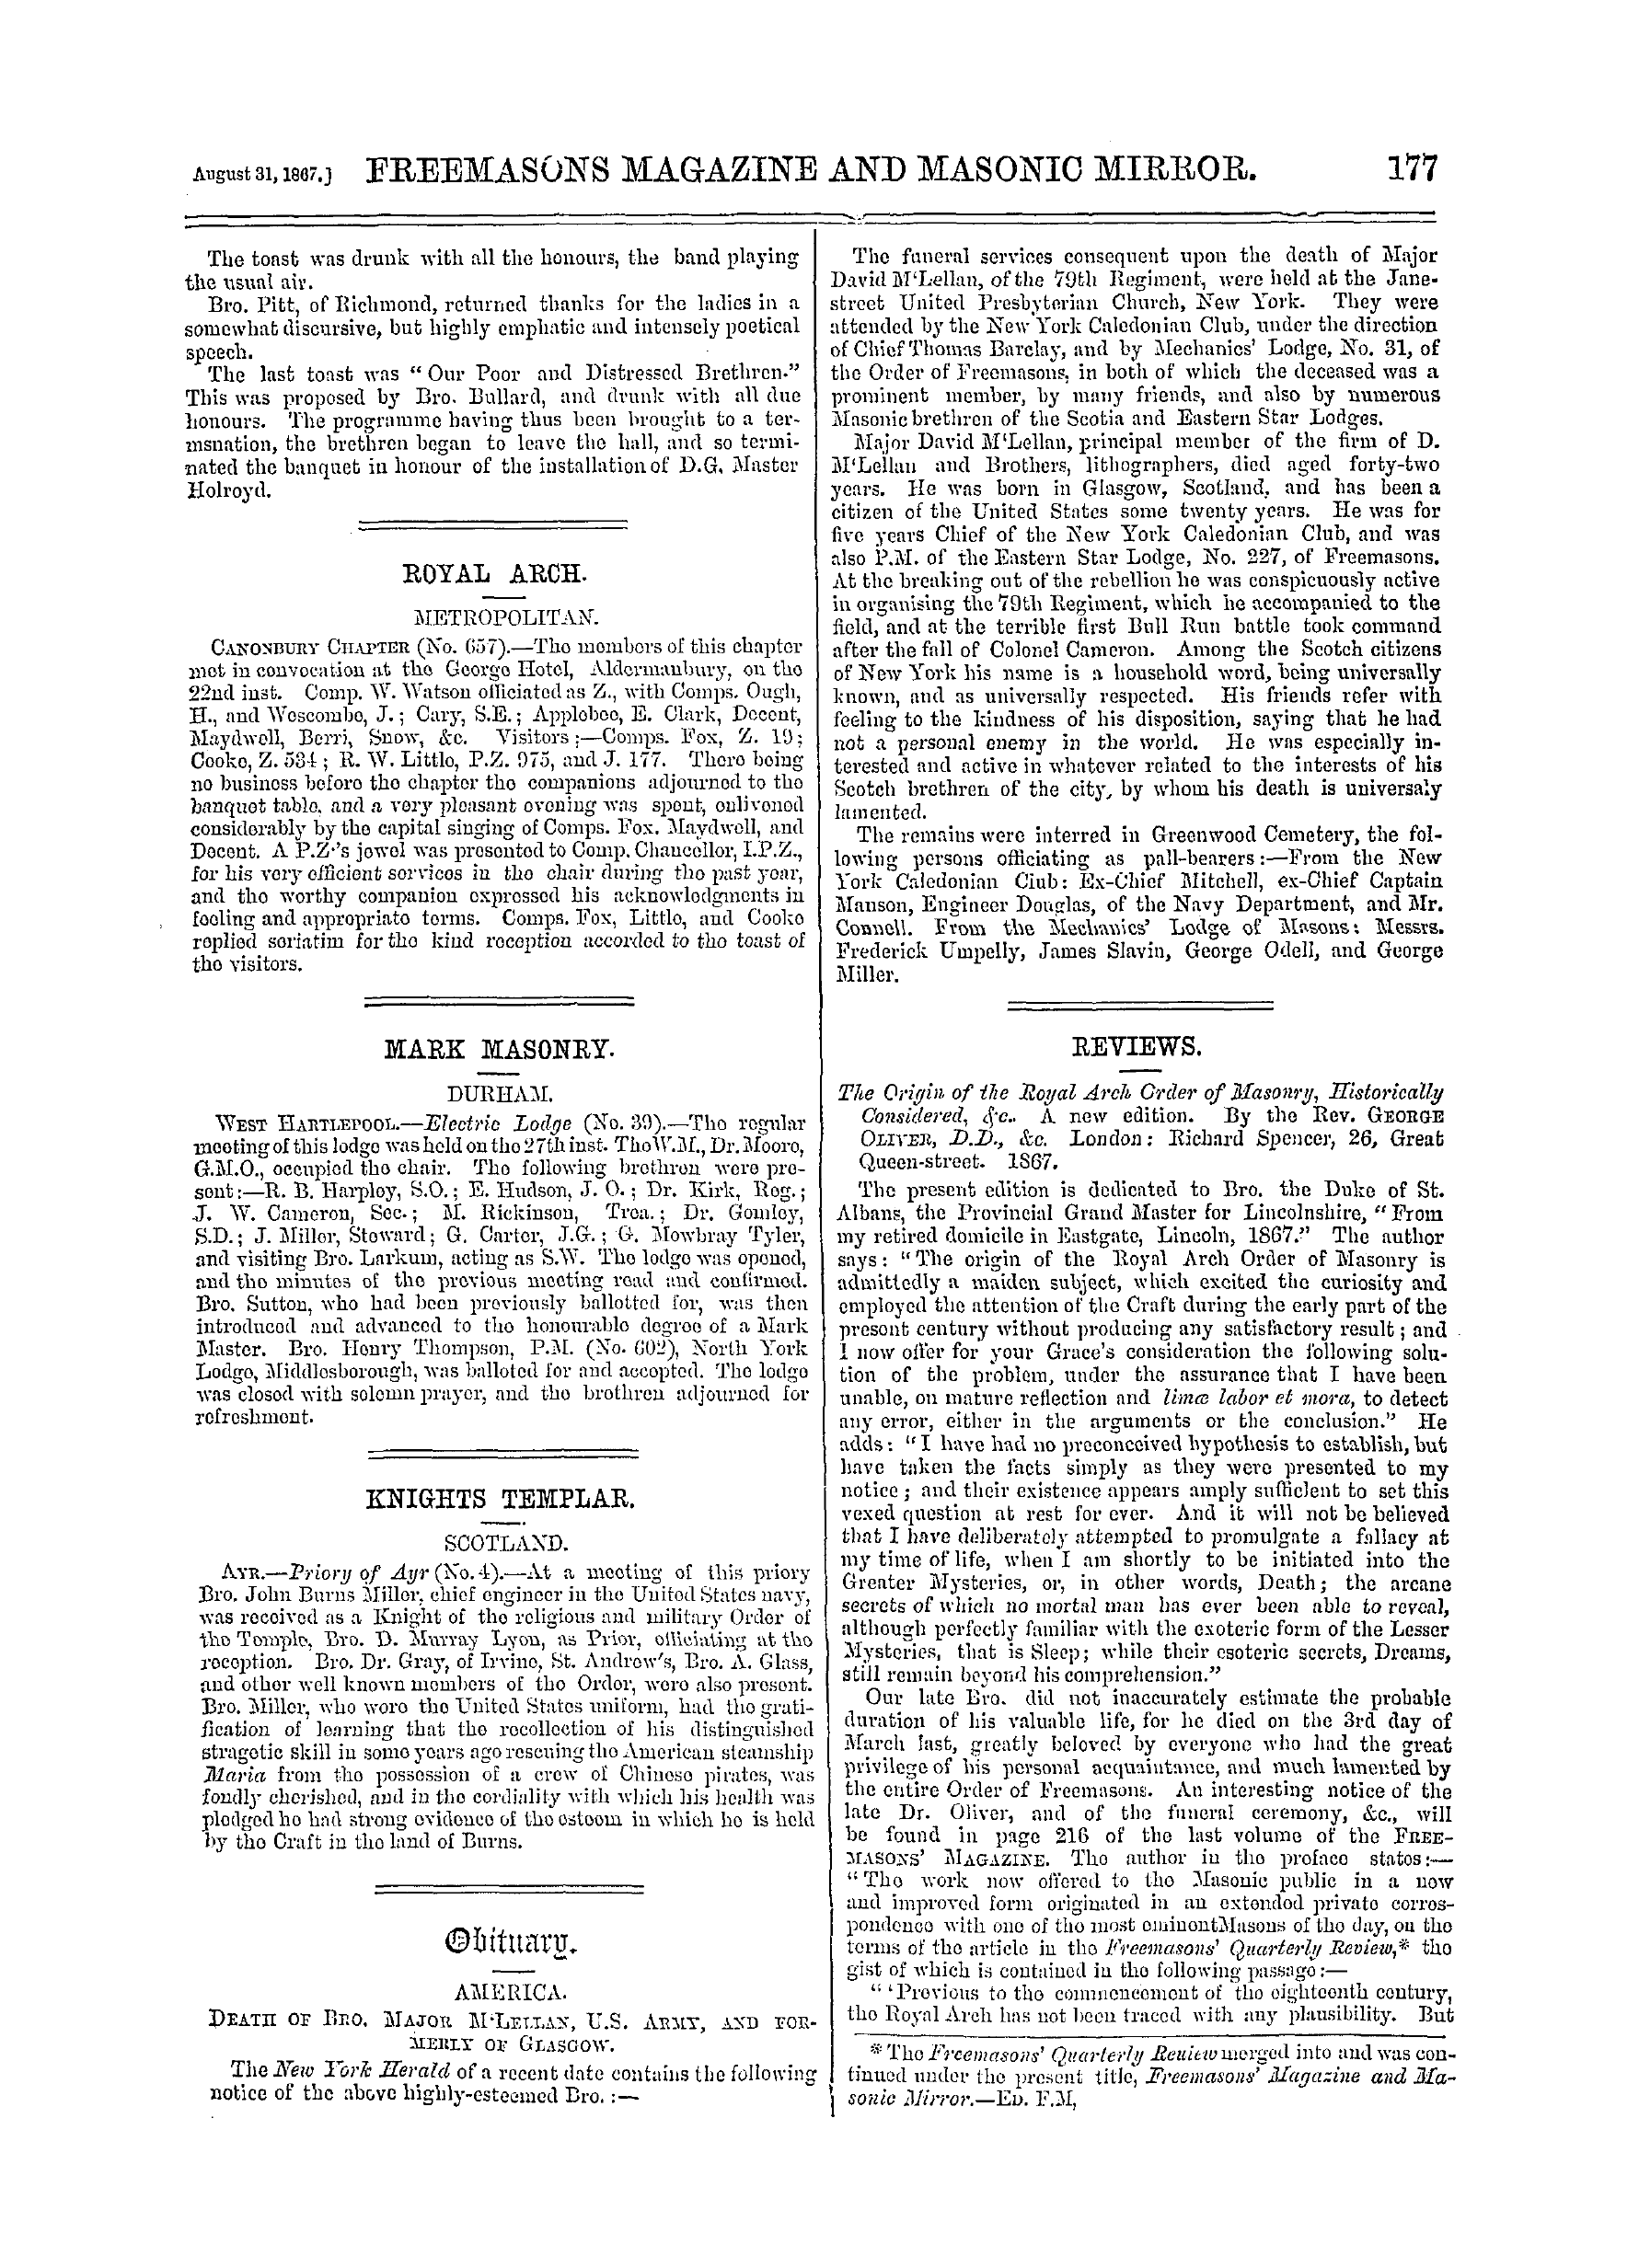 The Freemasons' Monthly Magazine: 1867-08-31 - Obituary.